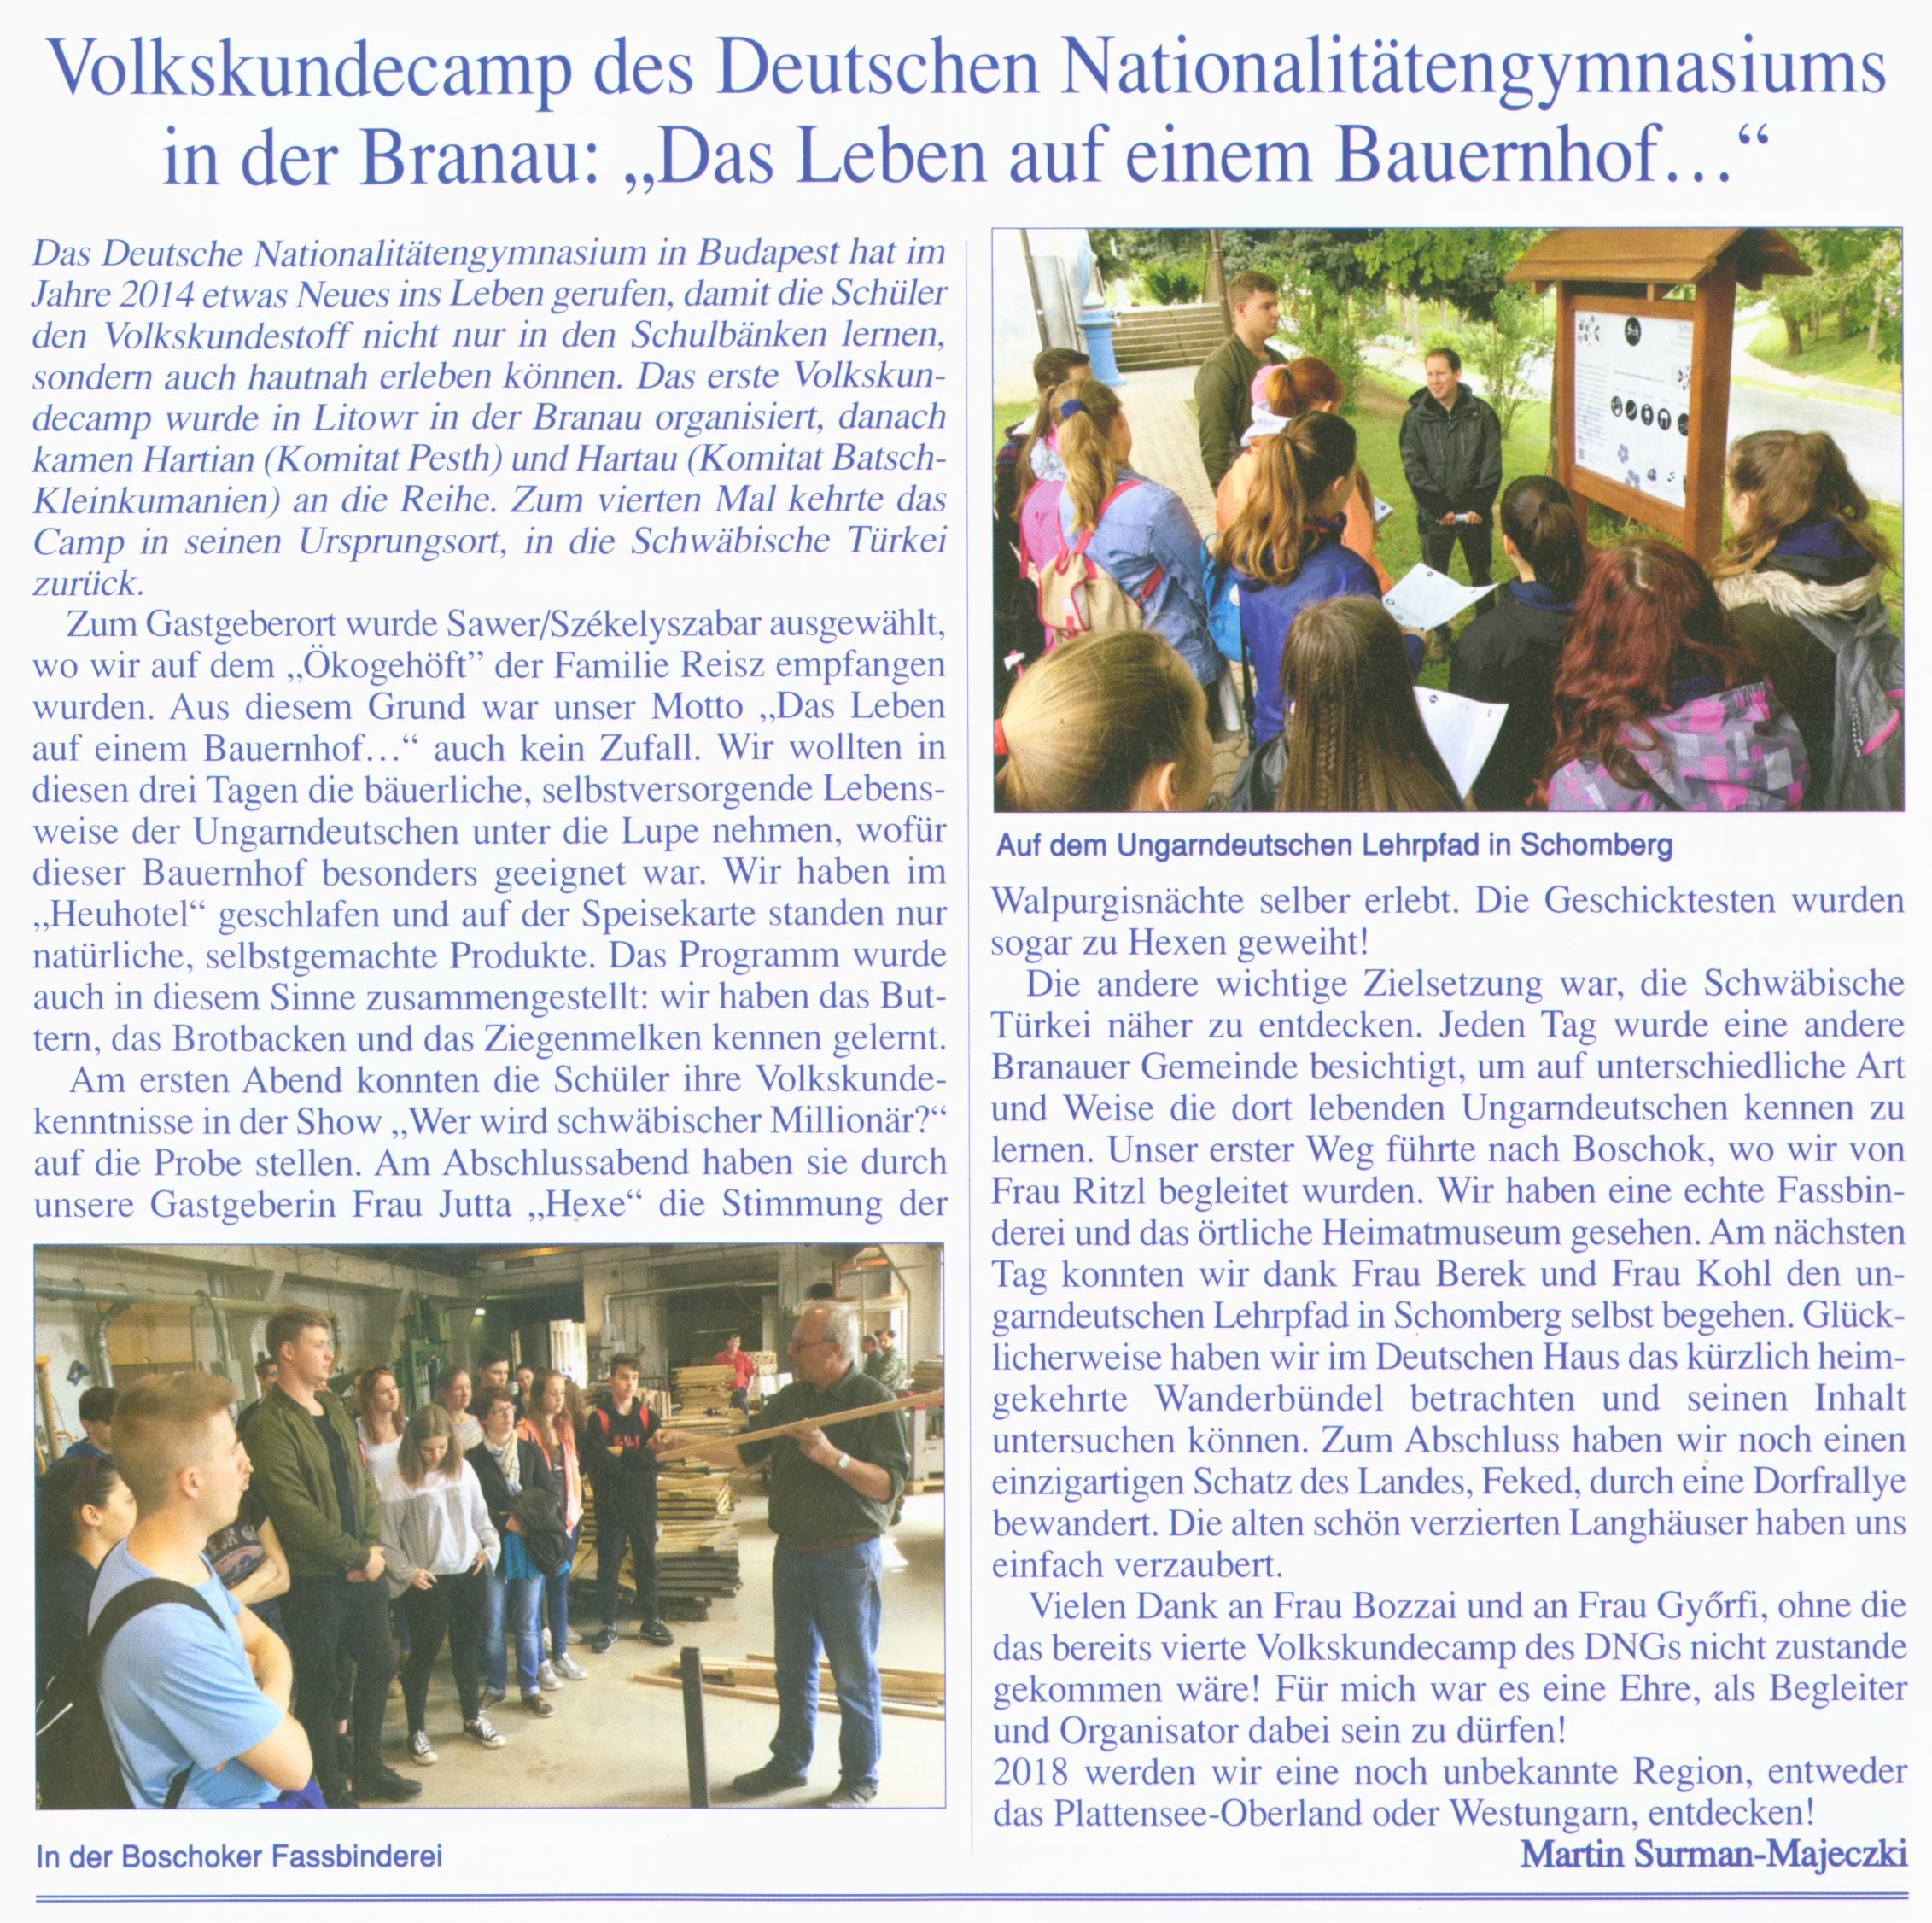 Volkskundecamp des Deutschen Nationalitätengymnasiums in der Branau: "Das Leben auf einem Bauernhof..."